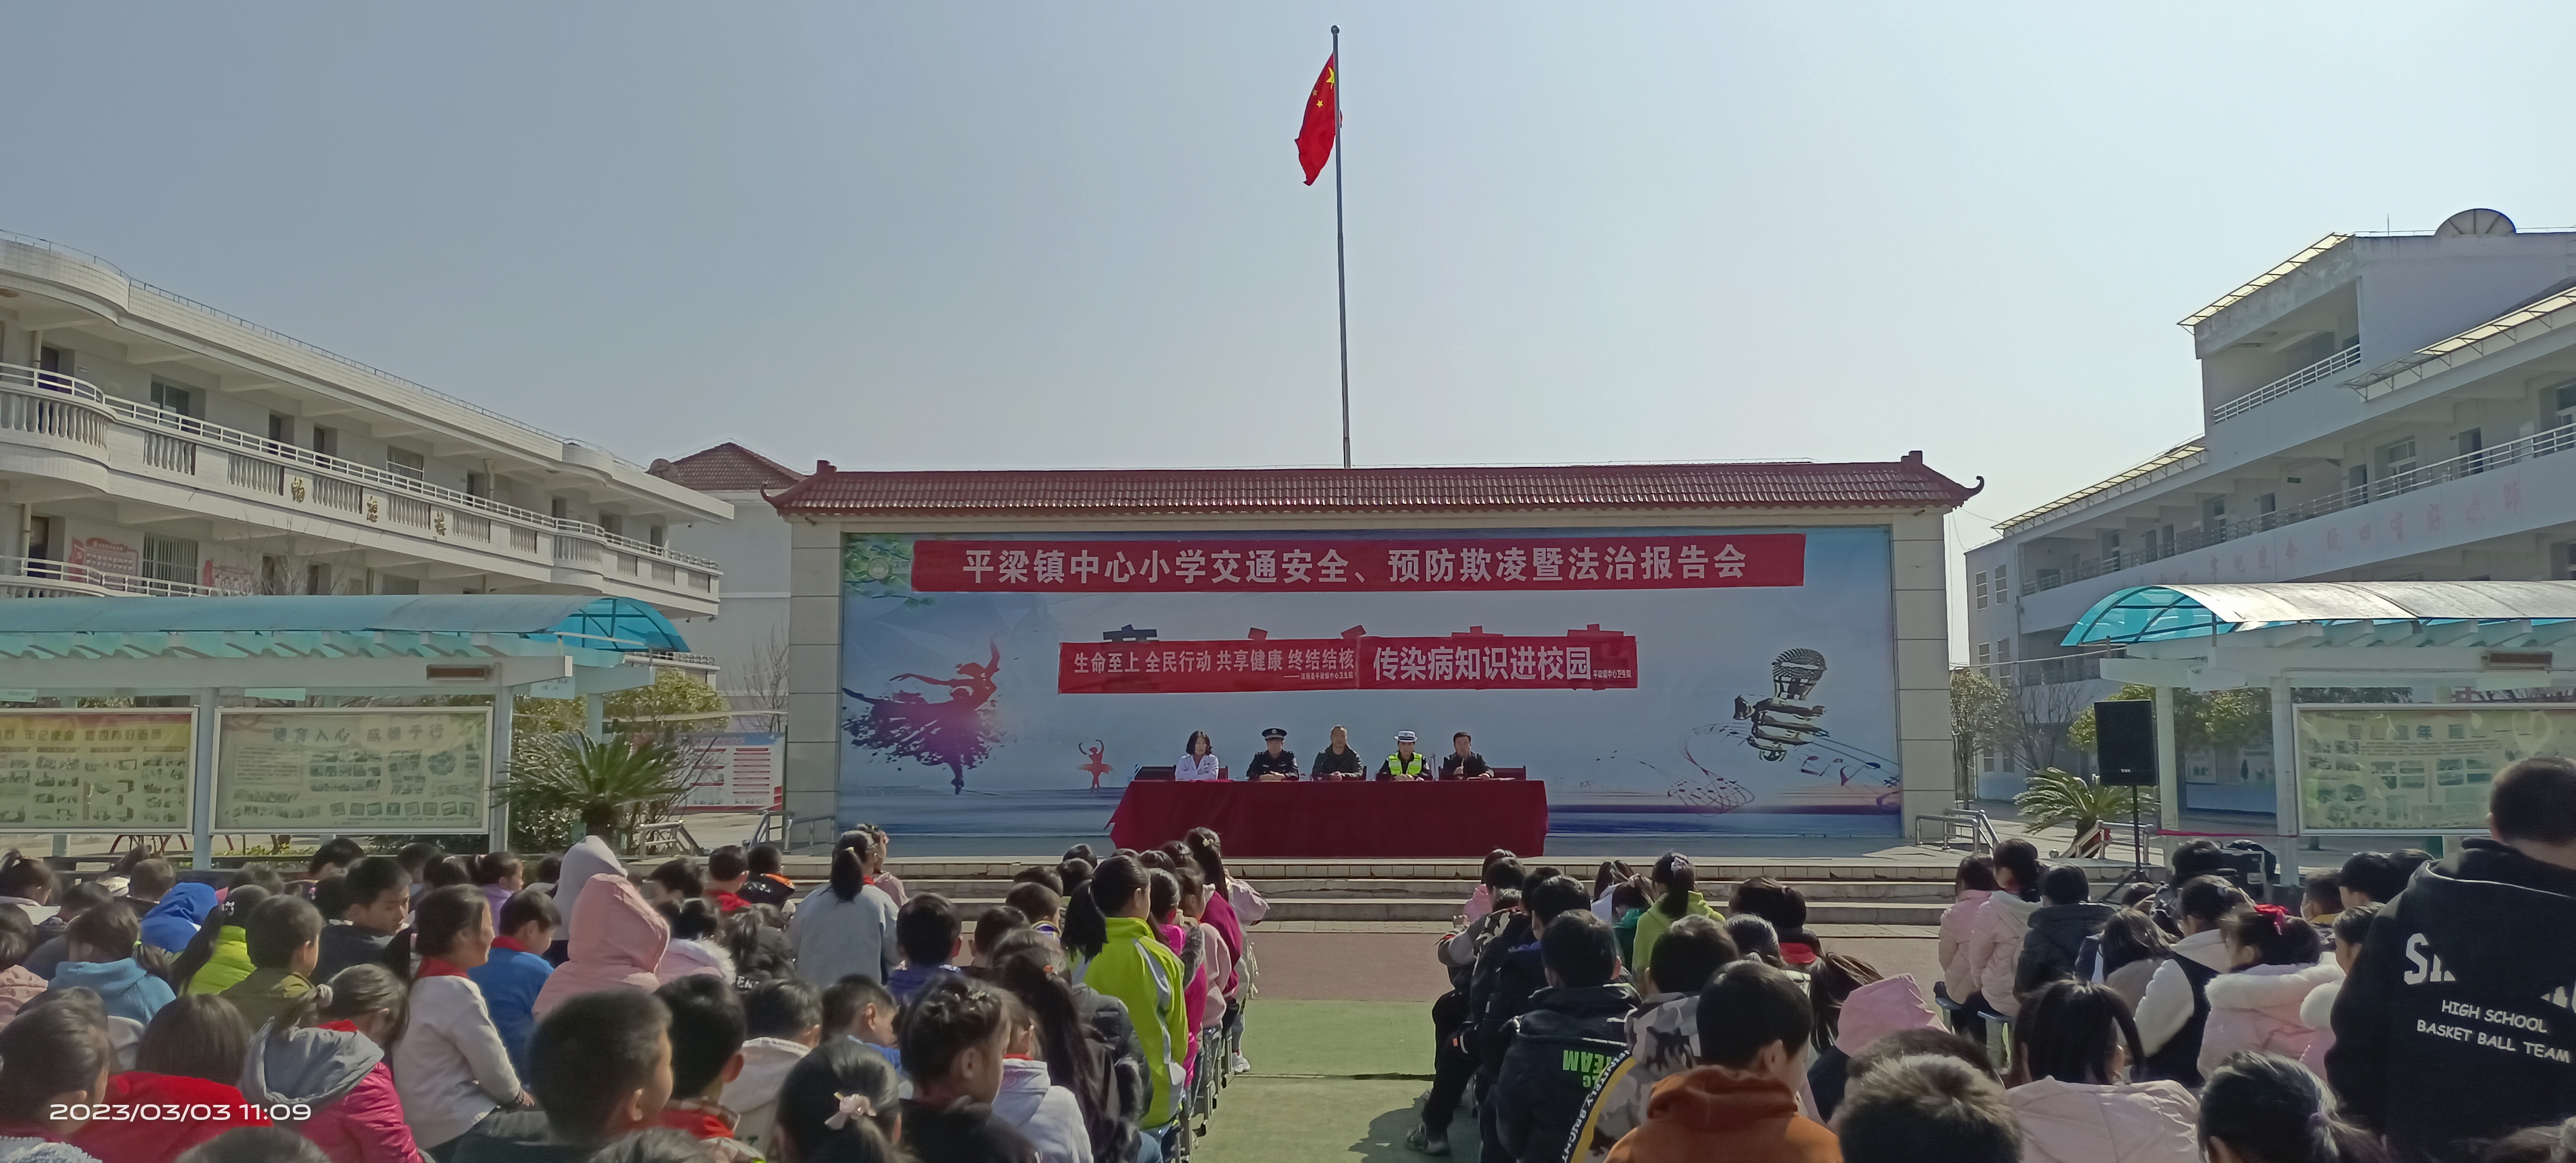 汉阴县平梁镇中心小学 举行法制安全教育报告会与传染病知识讲座